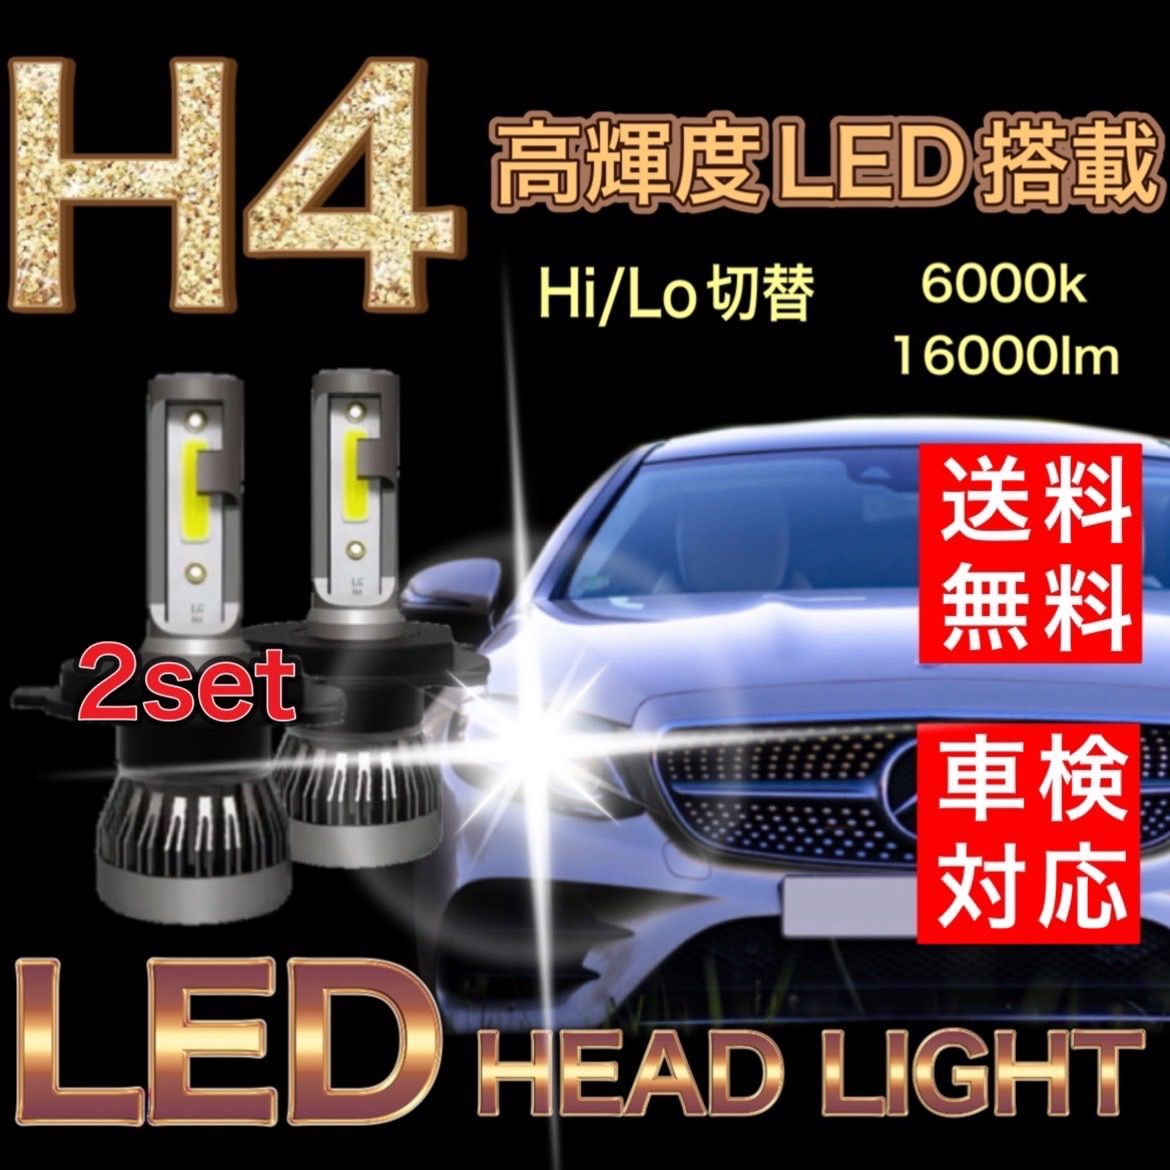 H4 LEDヘッドライト ダイハツ タント L350S L360S L375S L385S LA600S LA610S ハロゲン仕様車 新車検対応  ファンレス仕様 ホワイト 6000K 長寿命 Hi /Lo - メルカリ